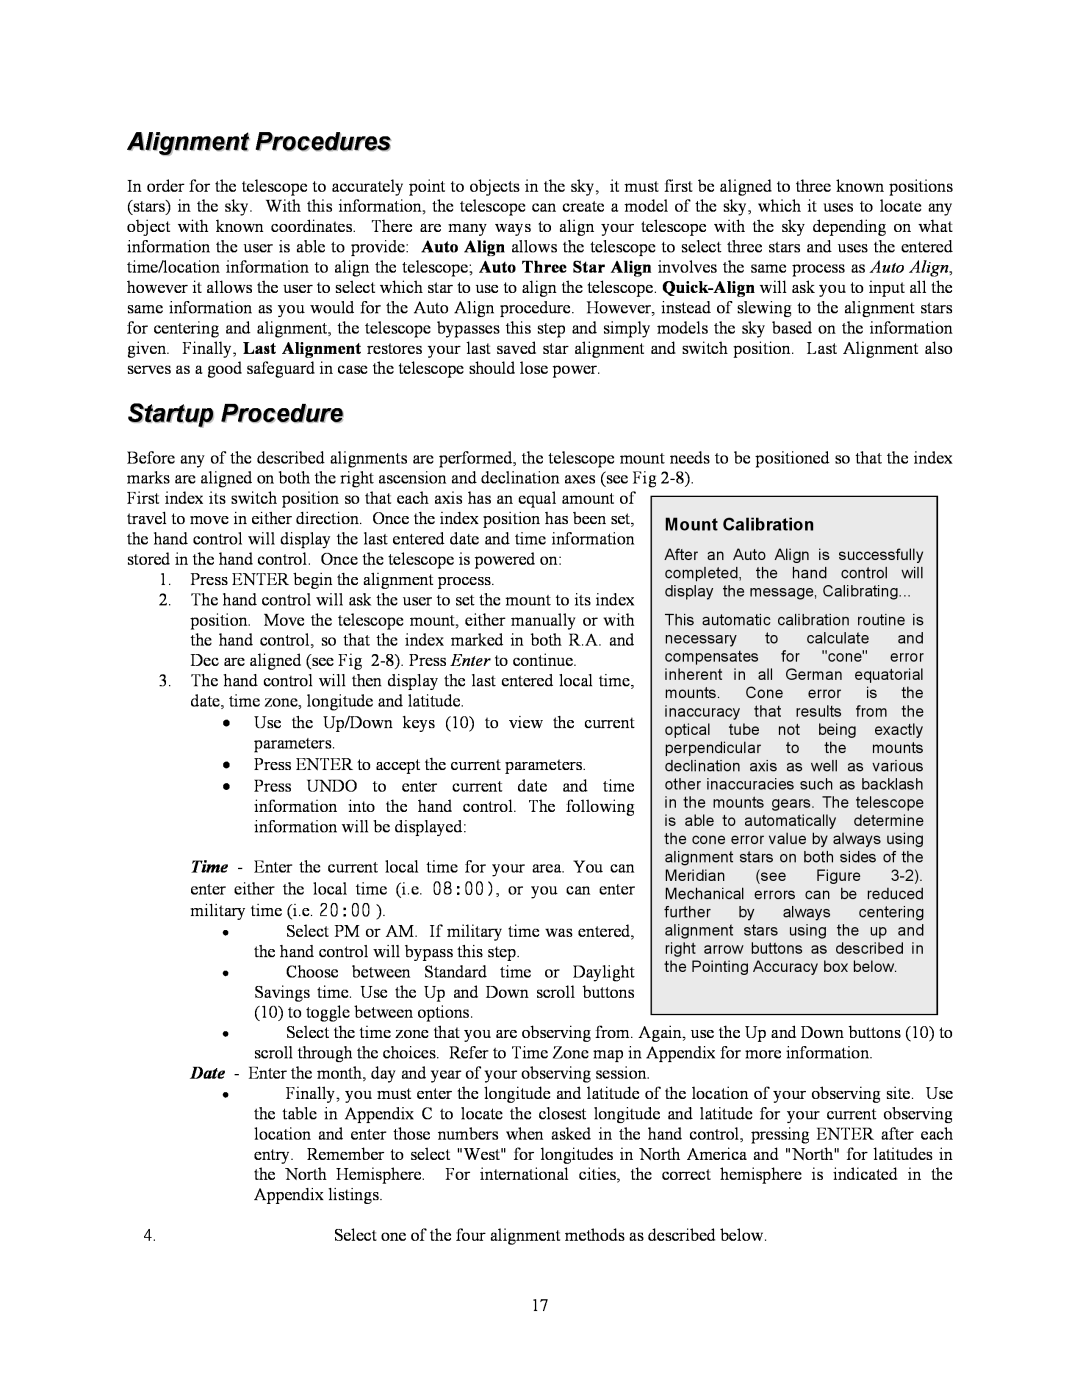 Celestron C10-N, C8-NGT manual Alignment Procedures, Startup Procedure 